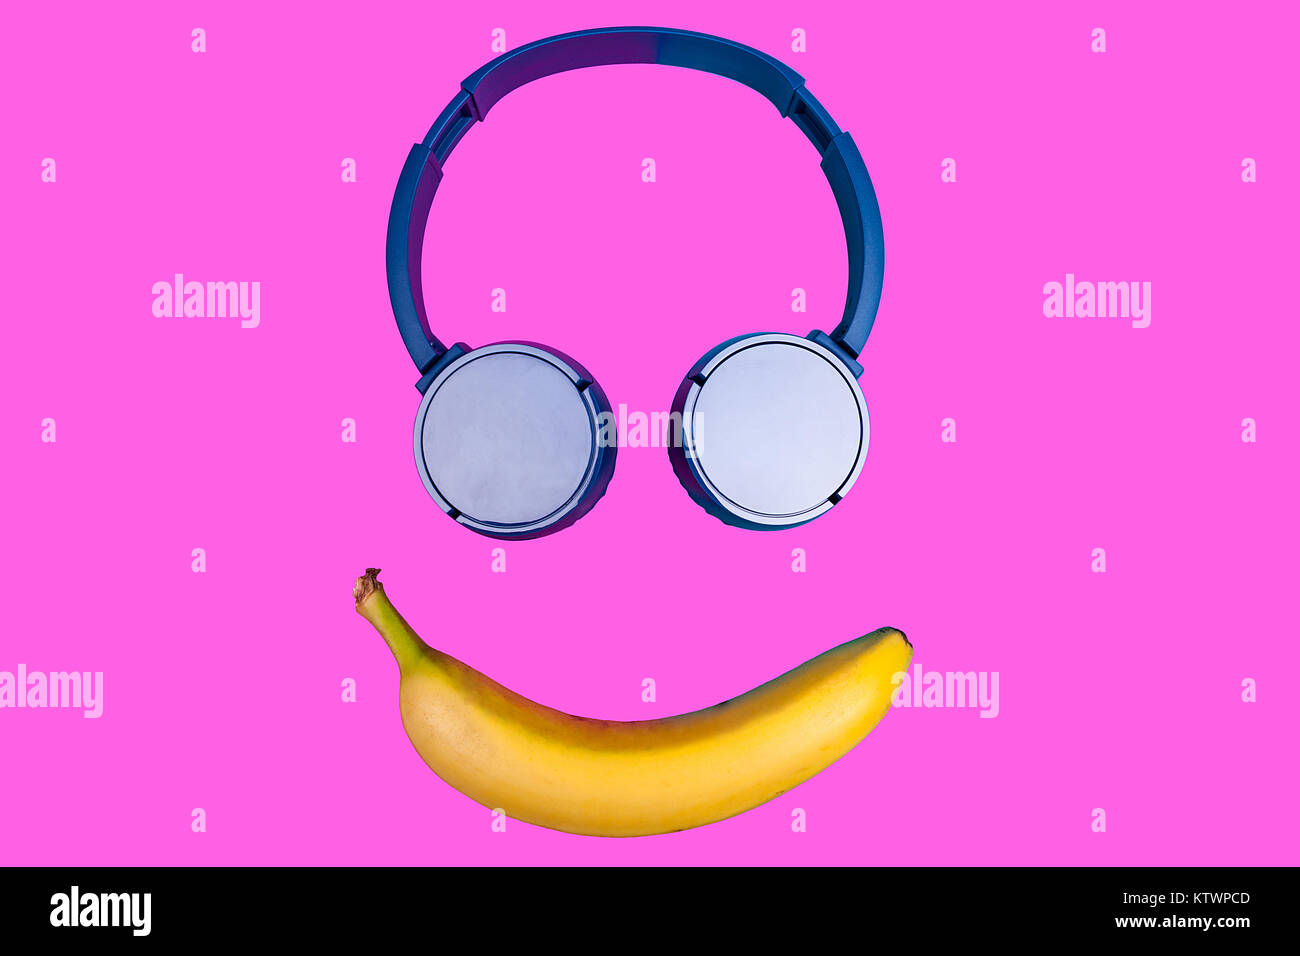 Pop Art flachbild Konzept der Banane und Kopfhörer auf lebhaften farbigen b Stockfoto